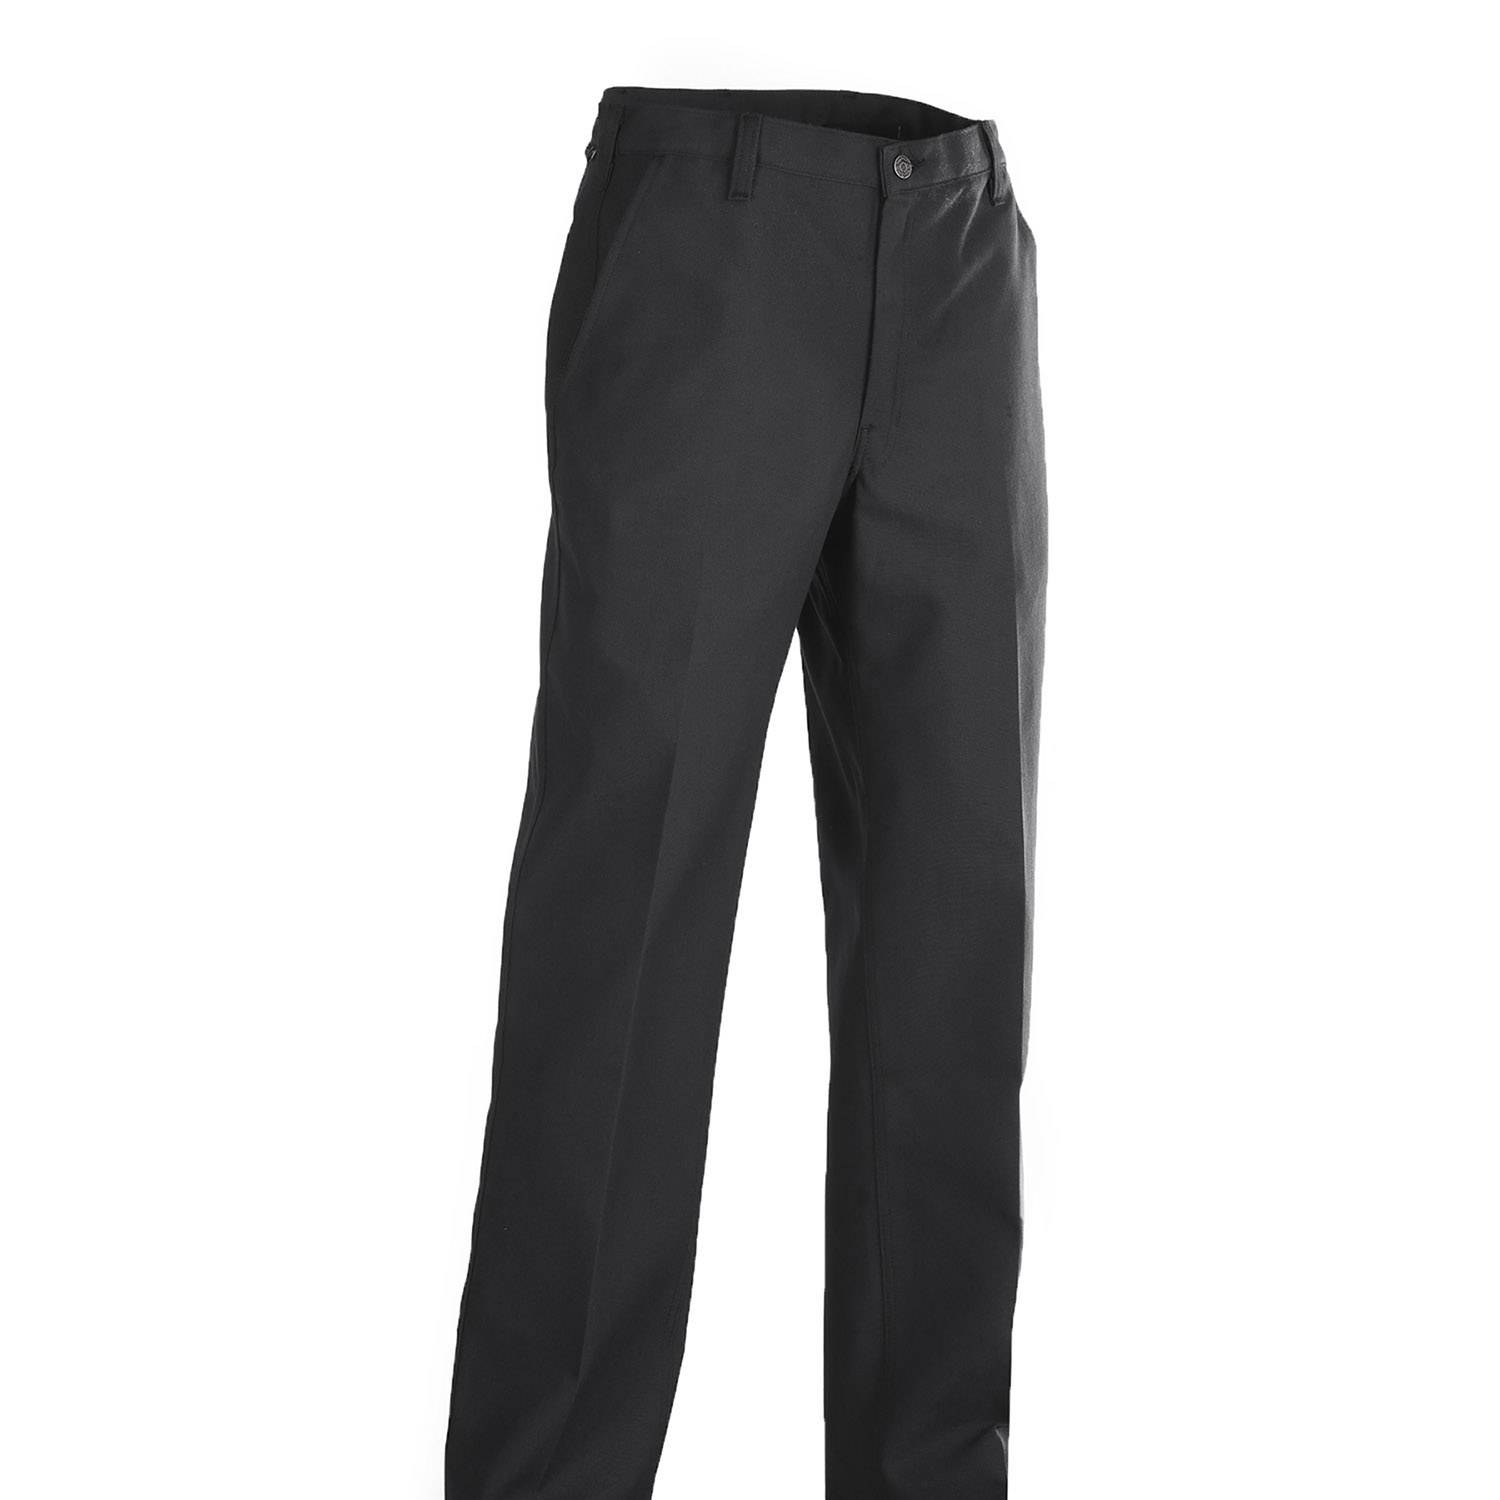 Workrite Nomex IIIA Industrial Pants with Cargo Pocket